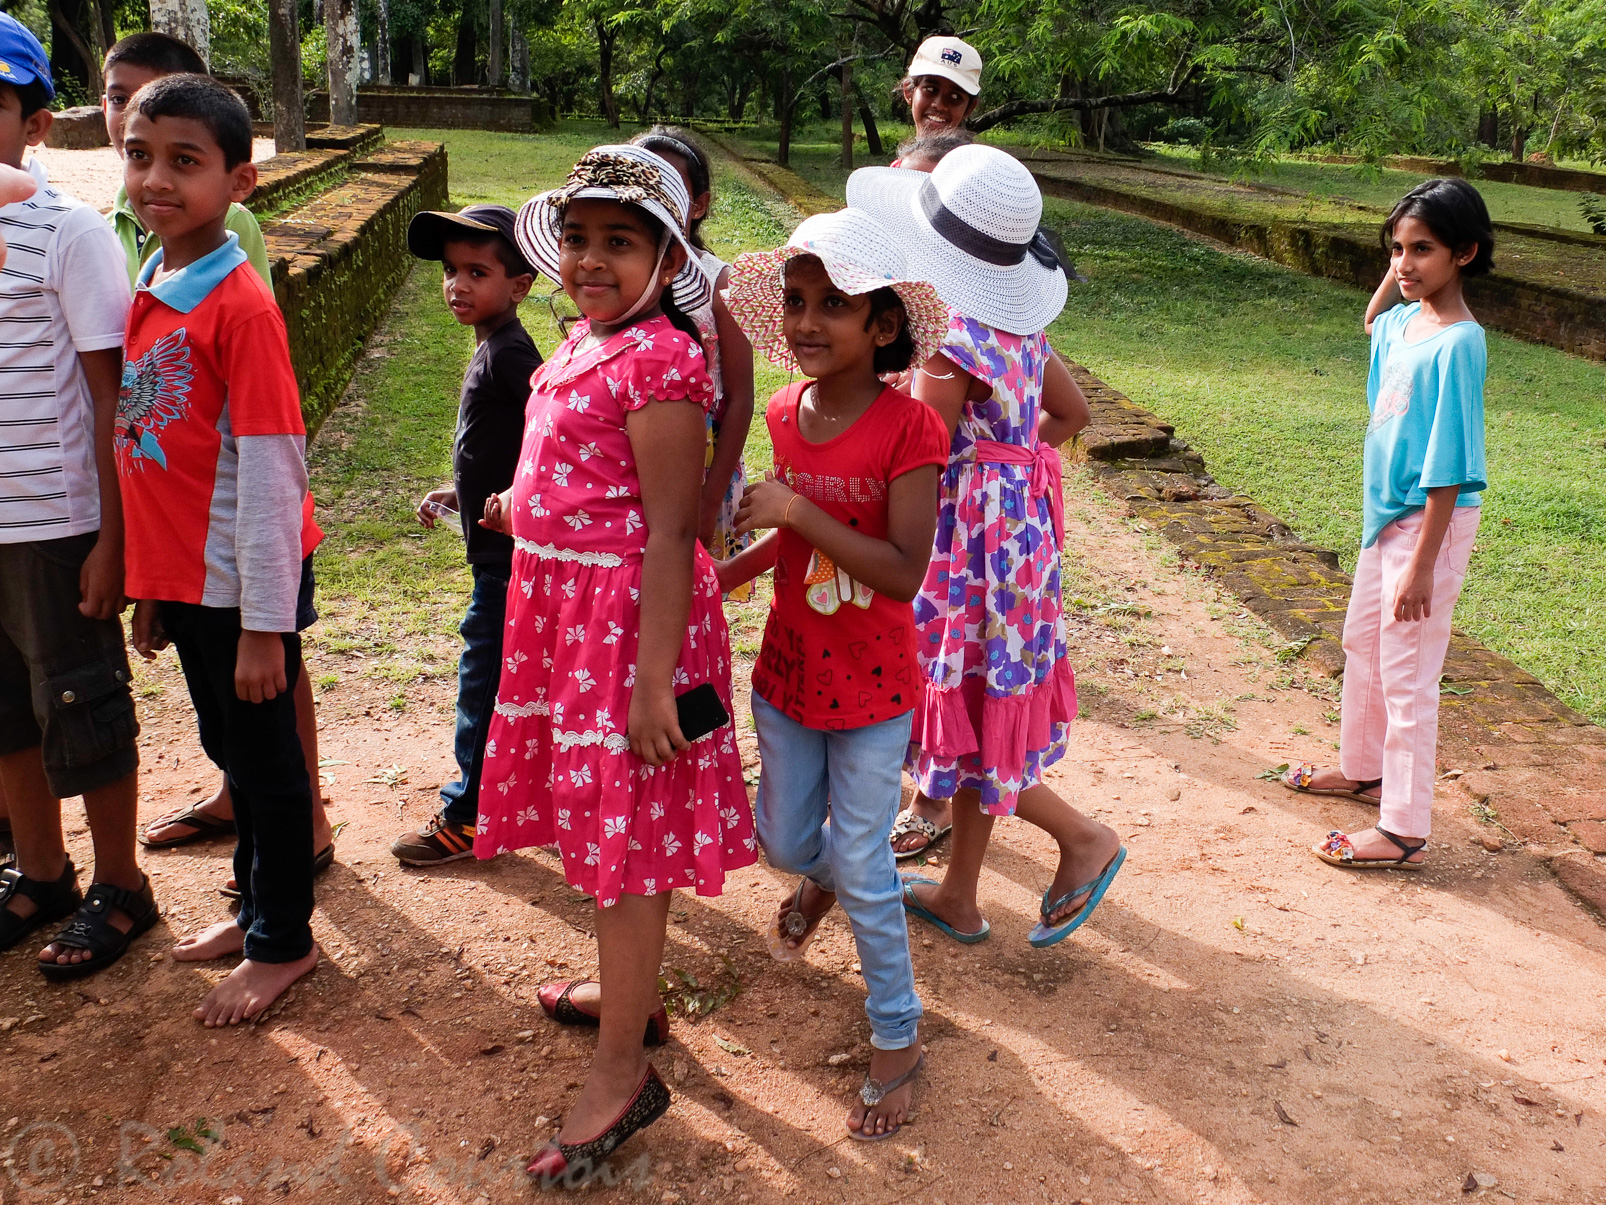 Touristes cyngalais visitant le Potgul Vihara à Polonnaruwa.